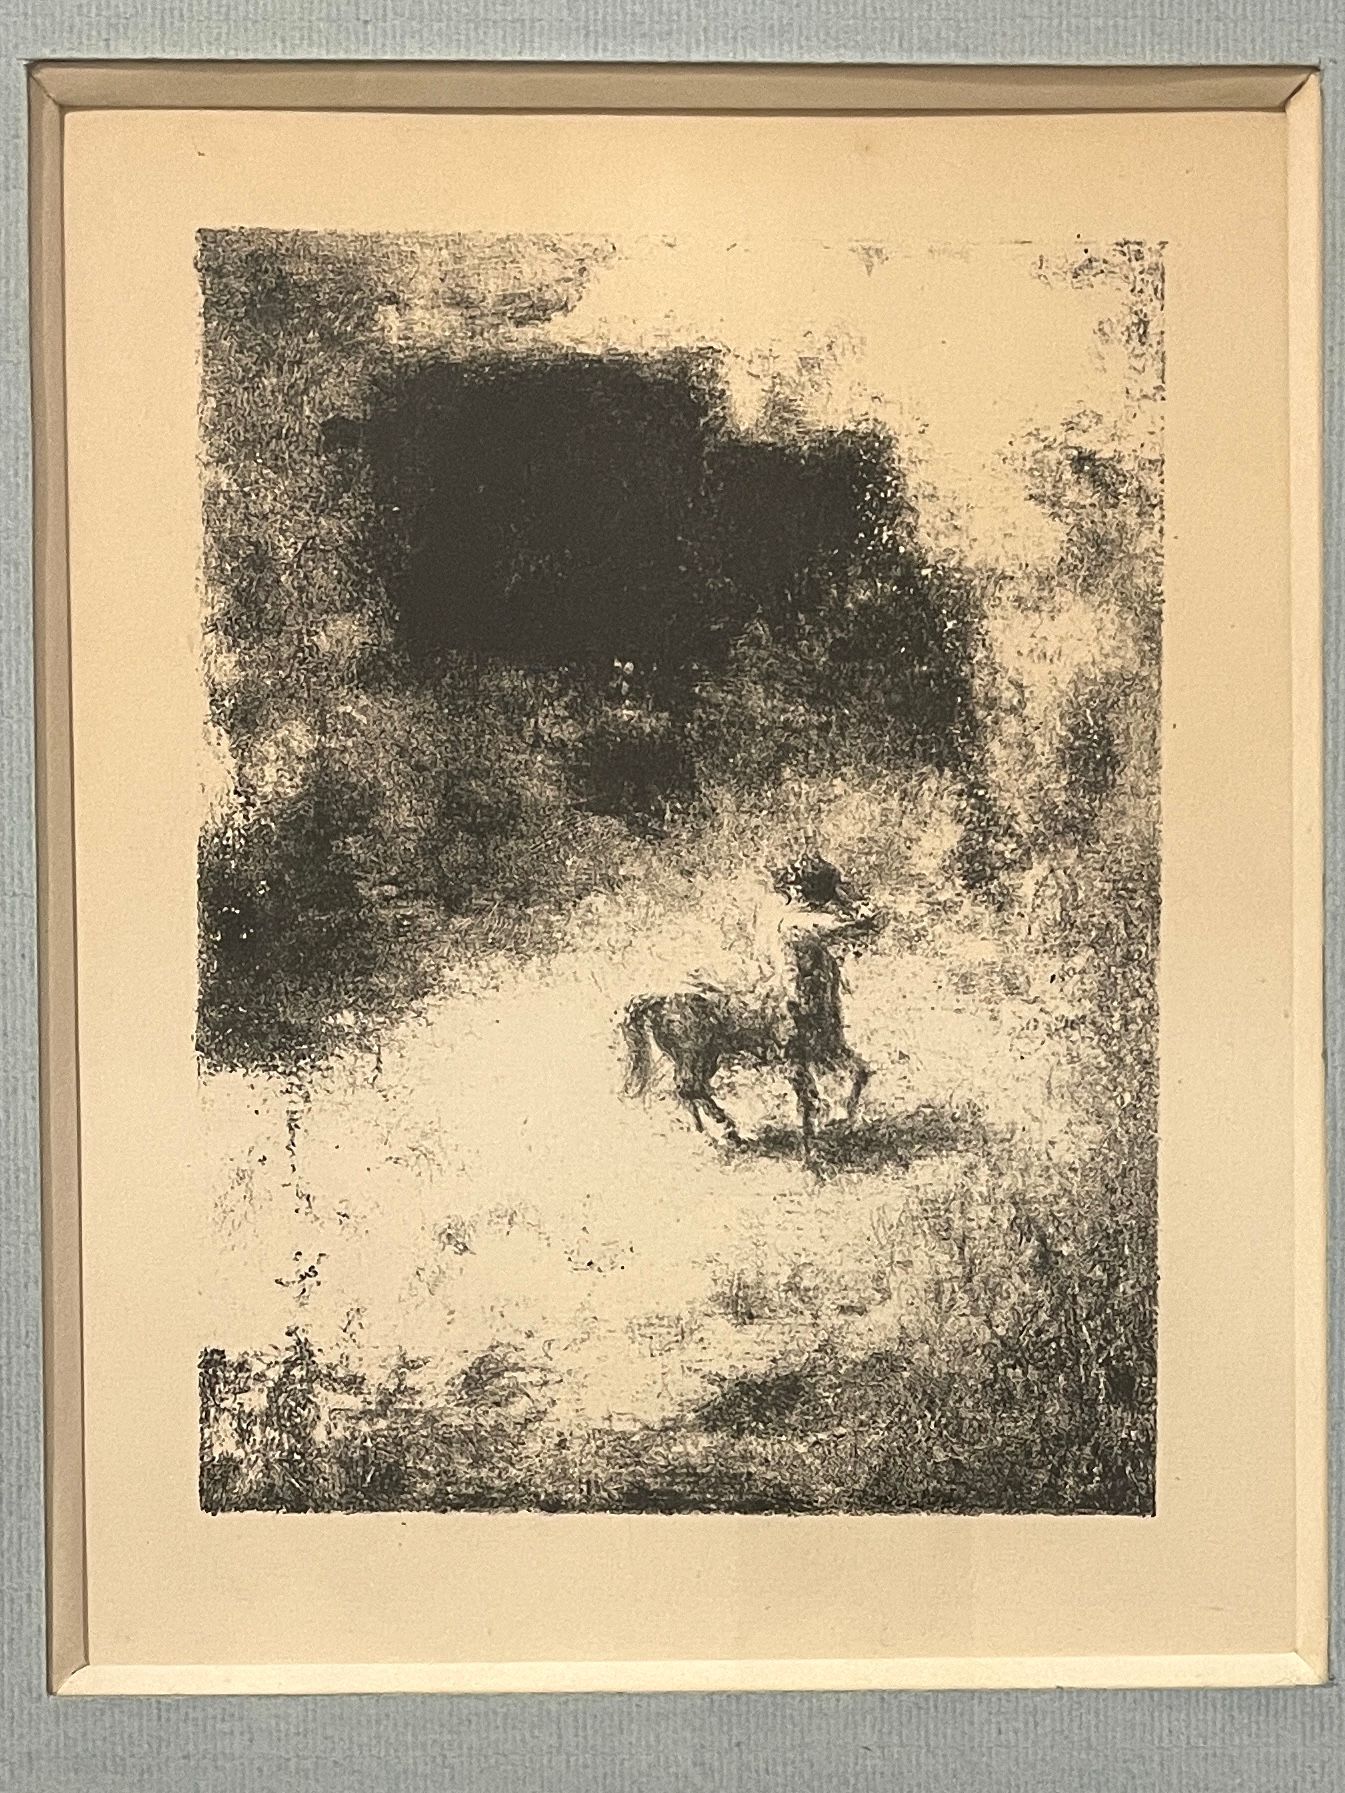 Null XAVIER KER ROUSSEL，表现半人马的石版画，参考吉维尼展览目录